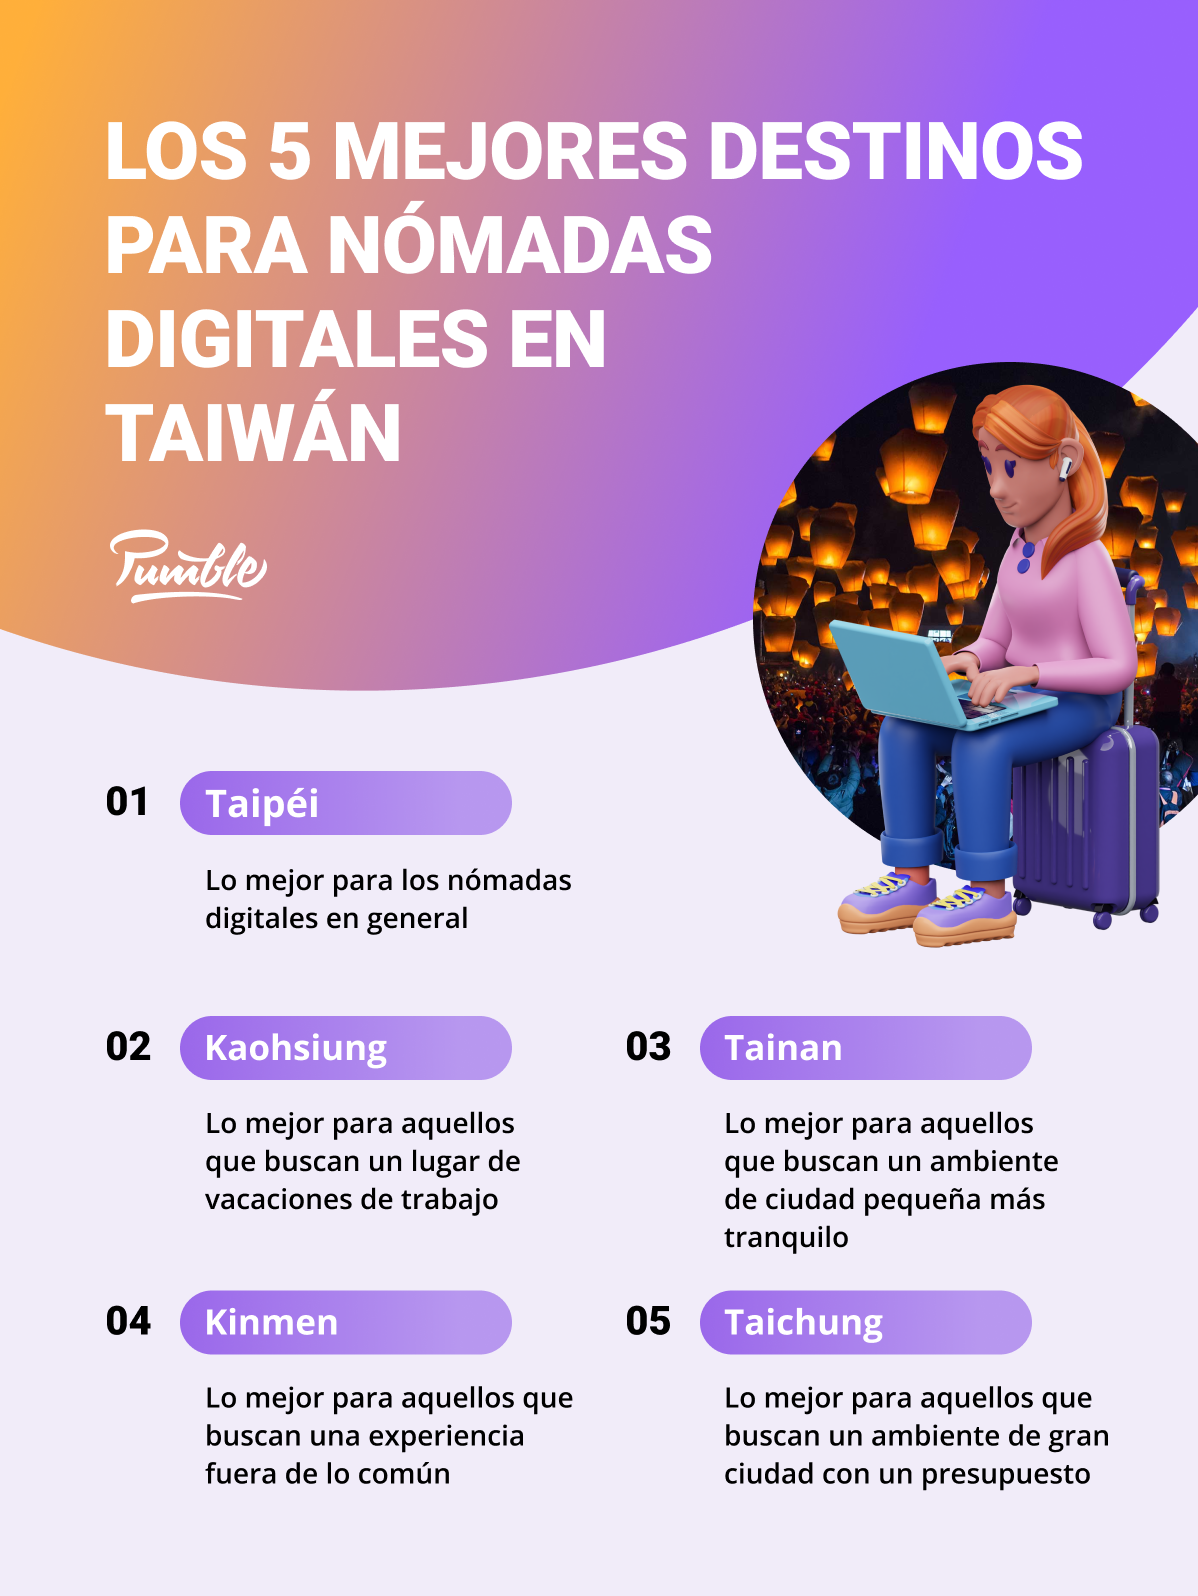 Los 5 mejores destinos para nómadas digitales en Taiwán